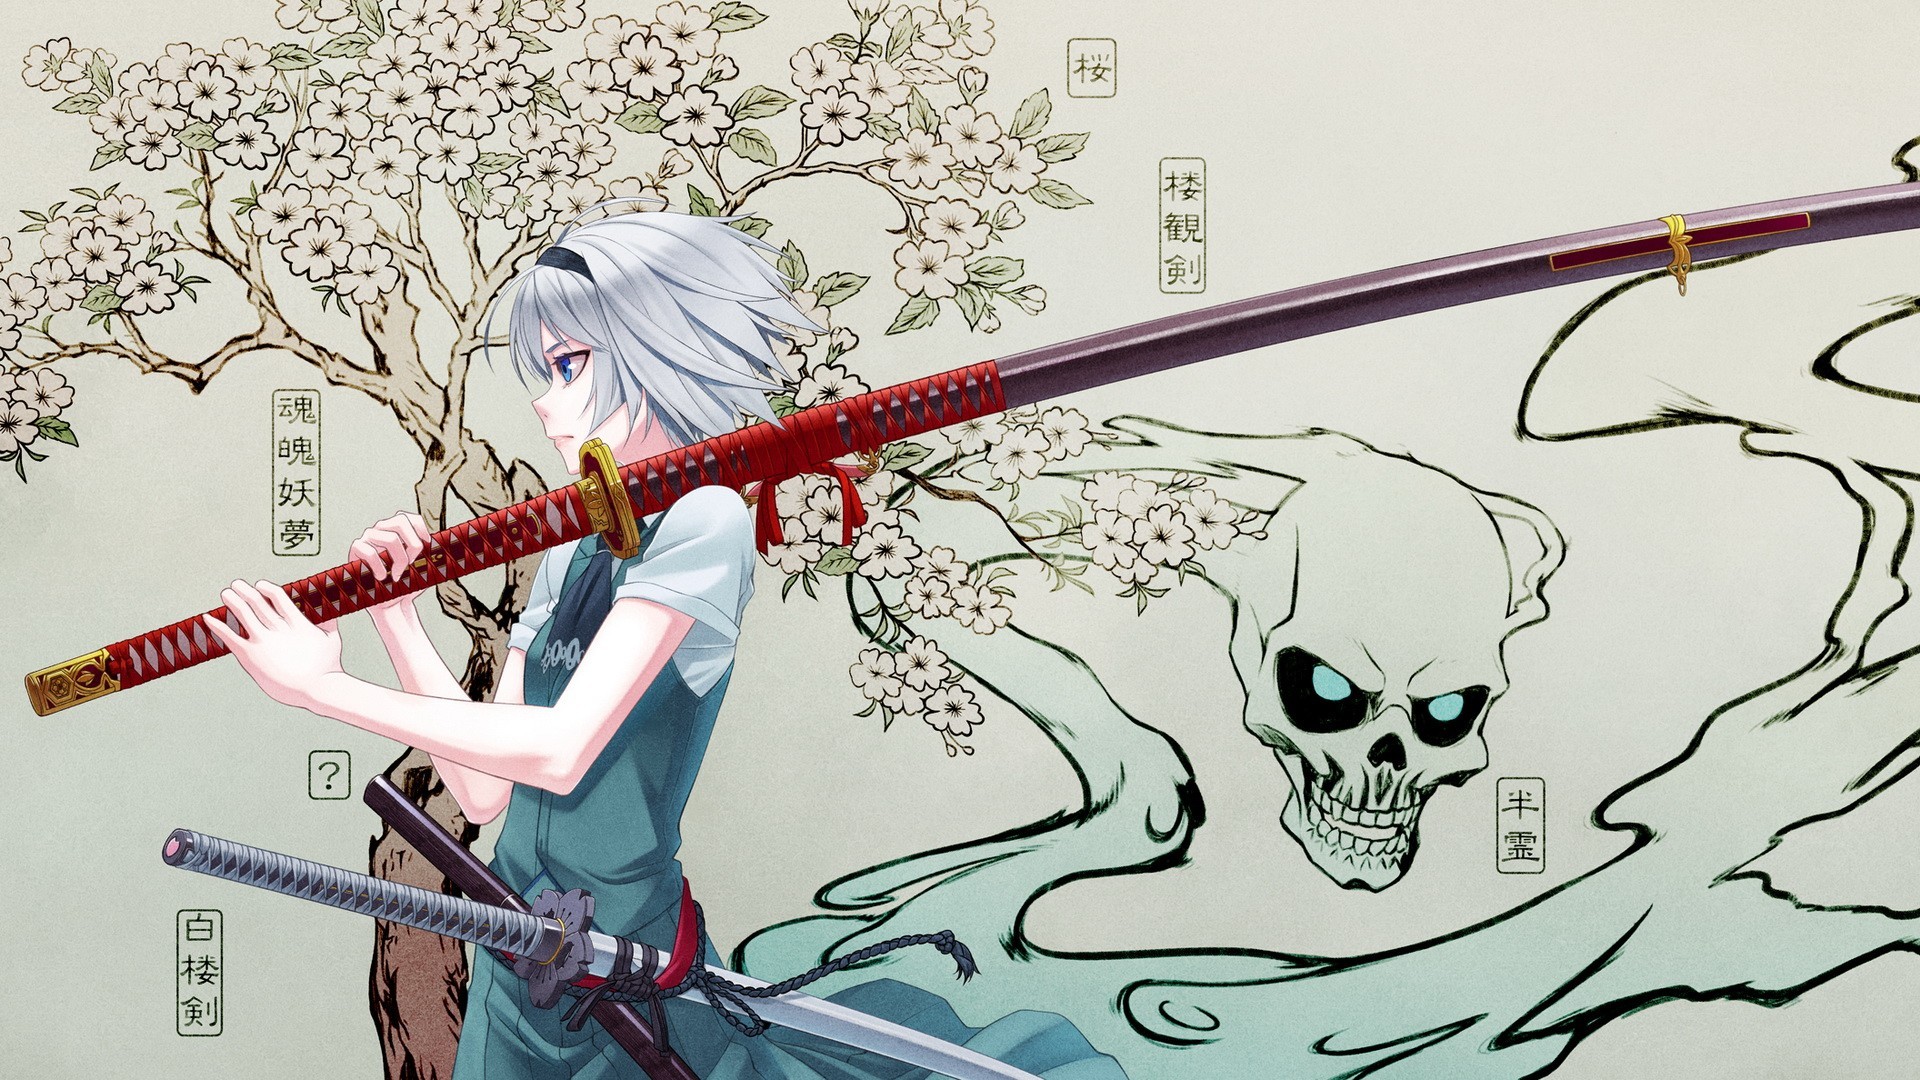 Anime Samurai Girl Wallpaper Background for Desktop Background Wallpaper  px 684.44 KB